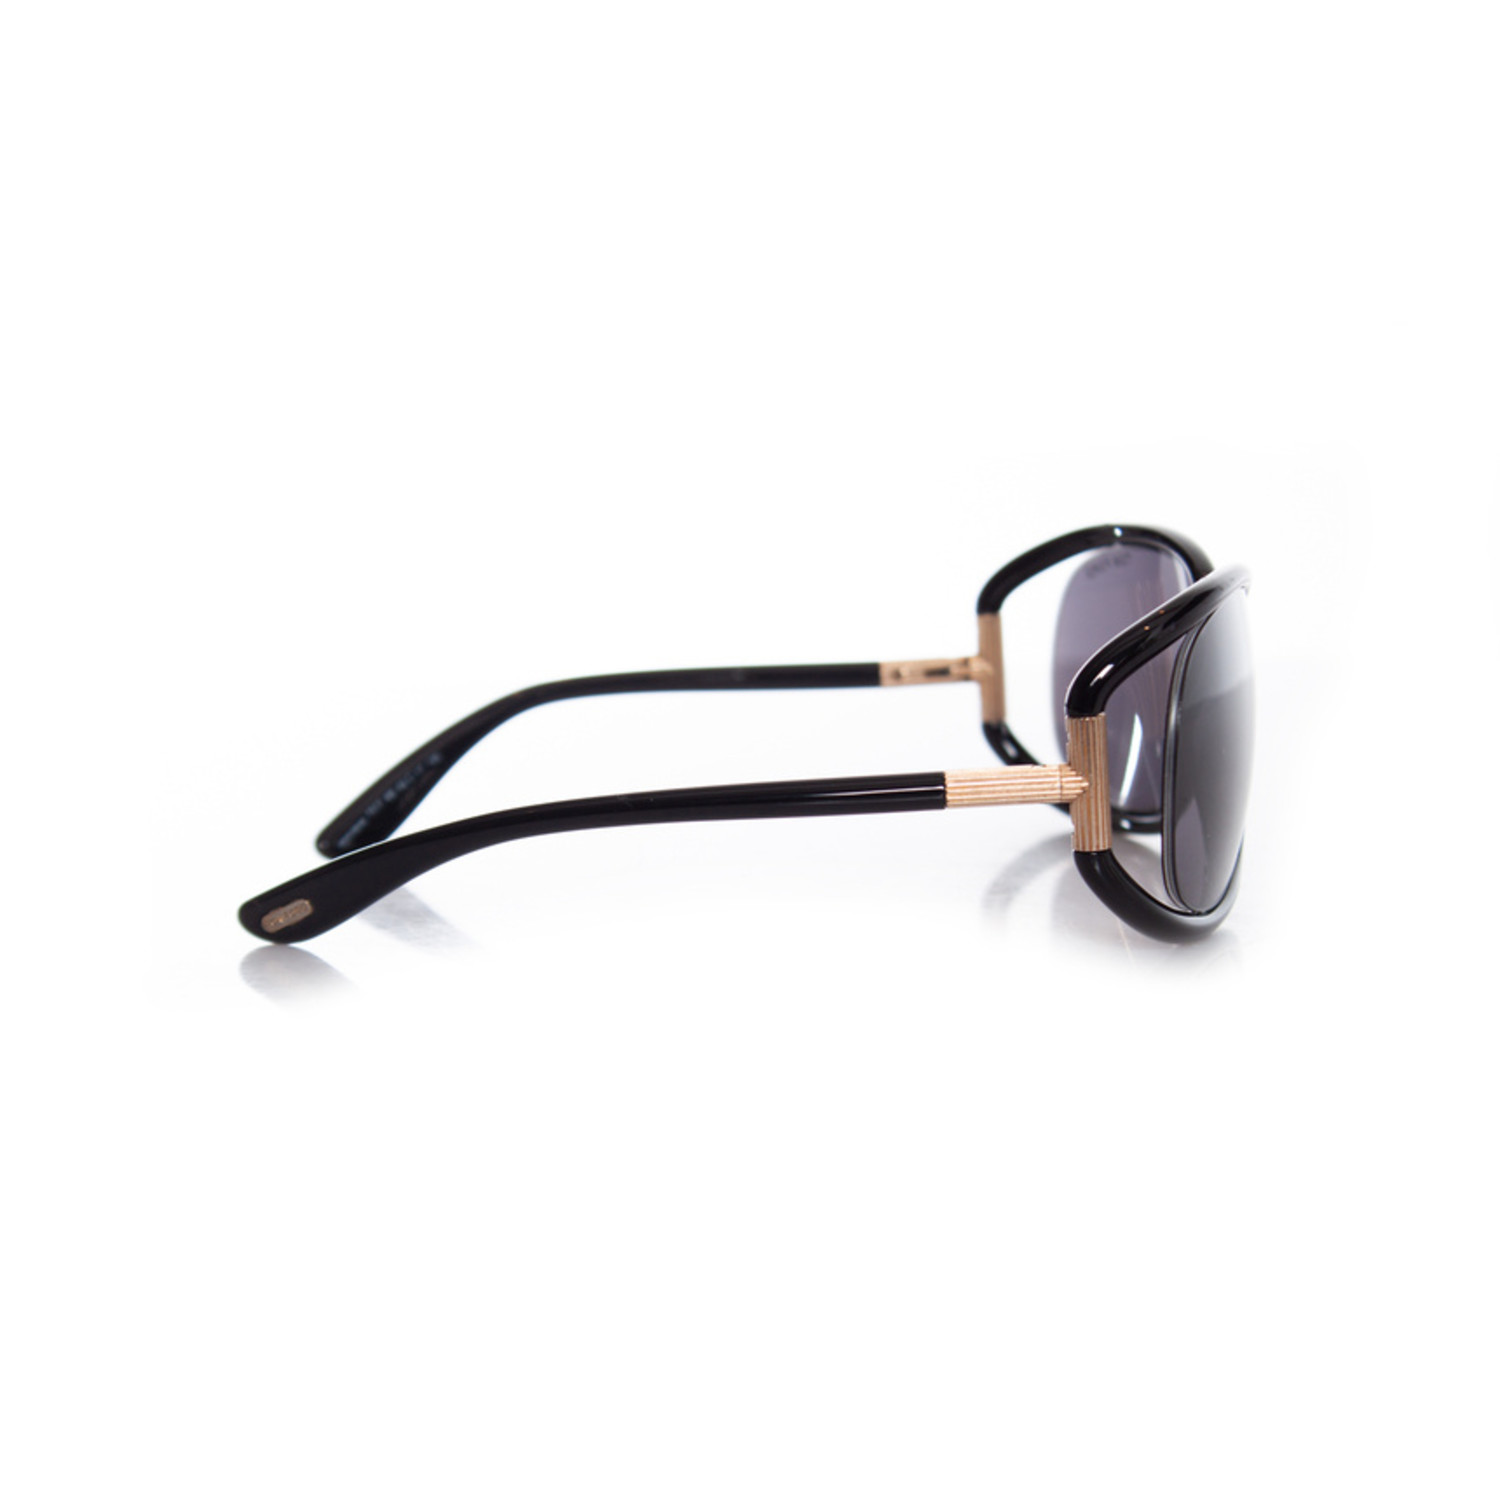 Tom Ford, Genevieve sunglasses. - Unique Designer Pieces